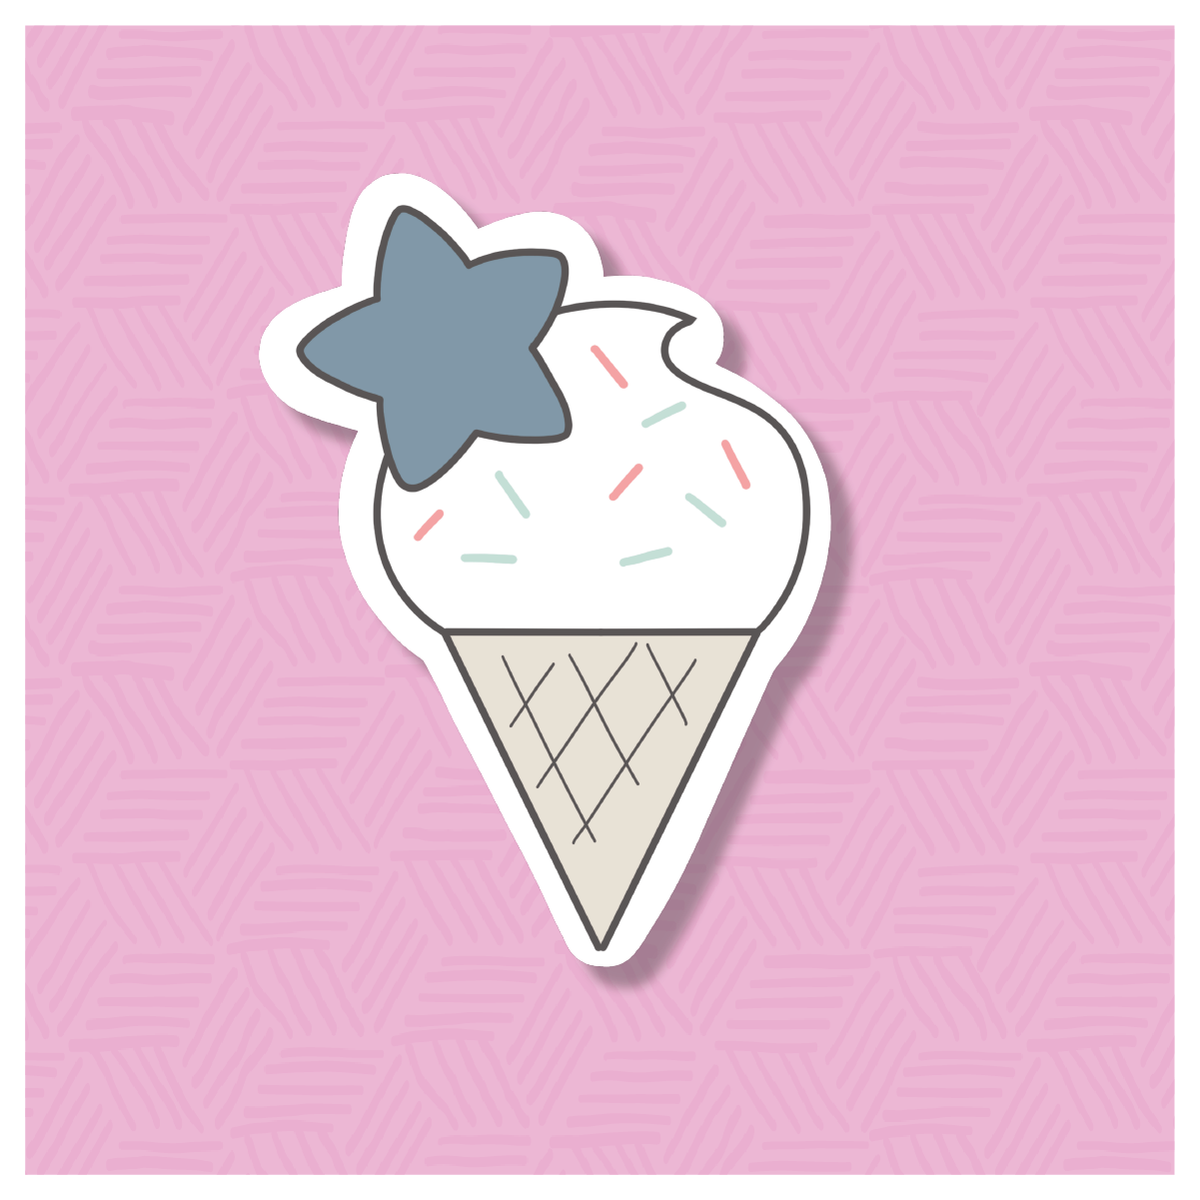 Star Ice Cream Cone Digital Sticker File